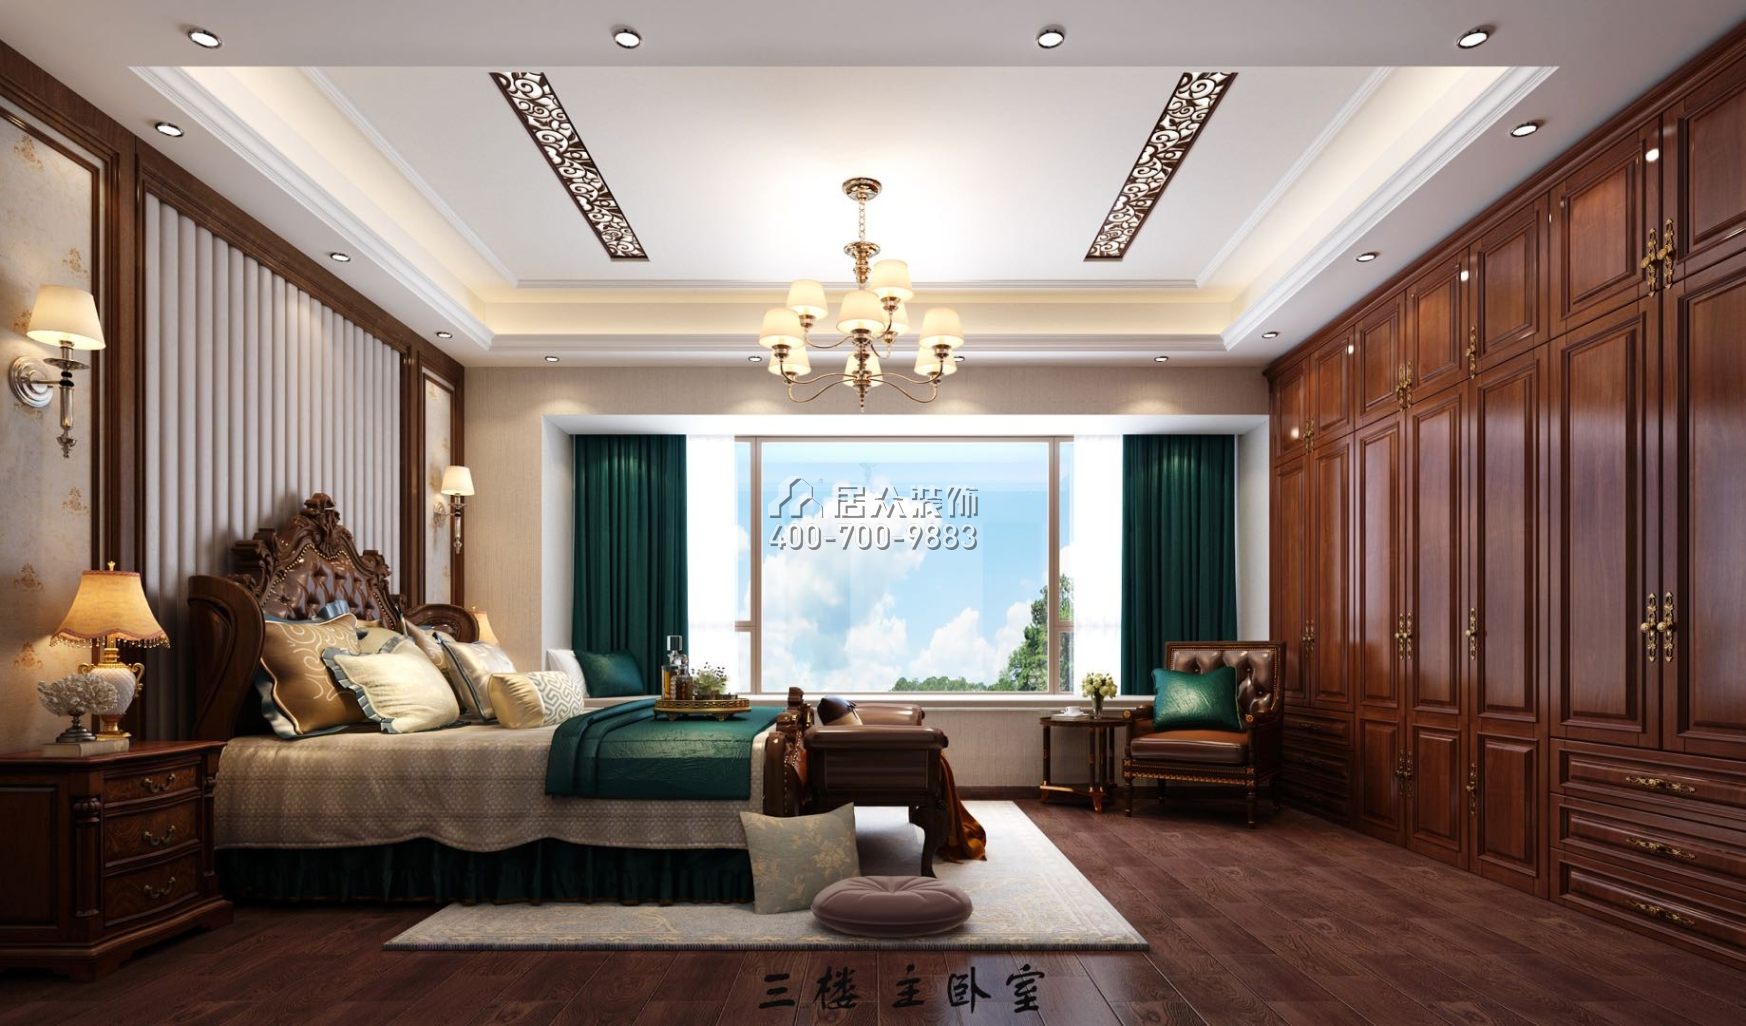 逸翠庄园天御南188平方米中式风格别墅户型卧室装修效果图